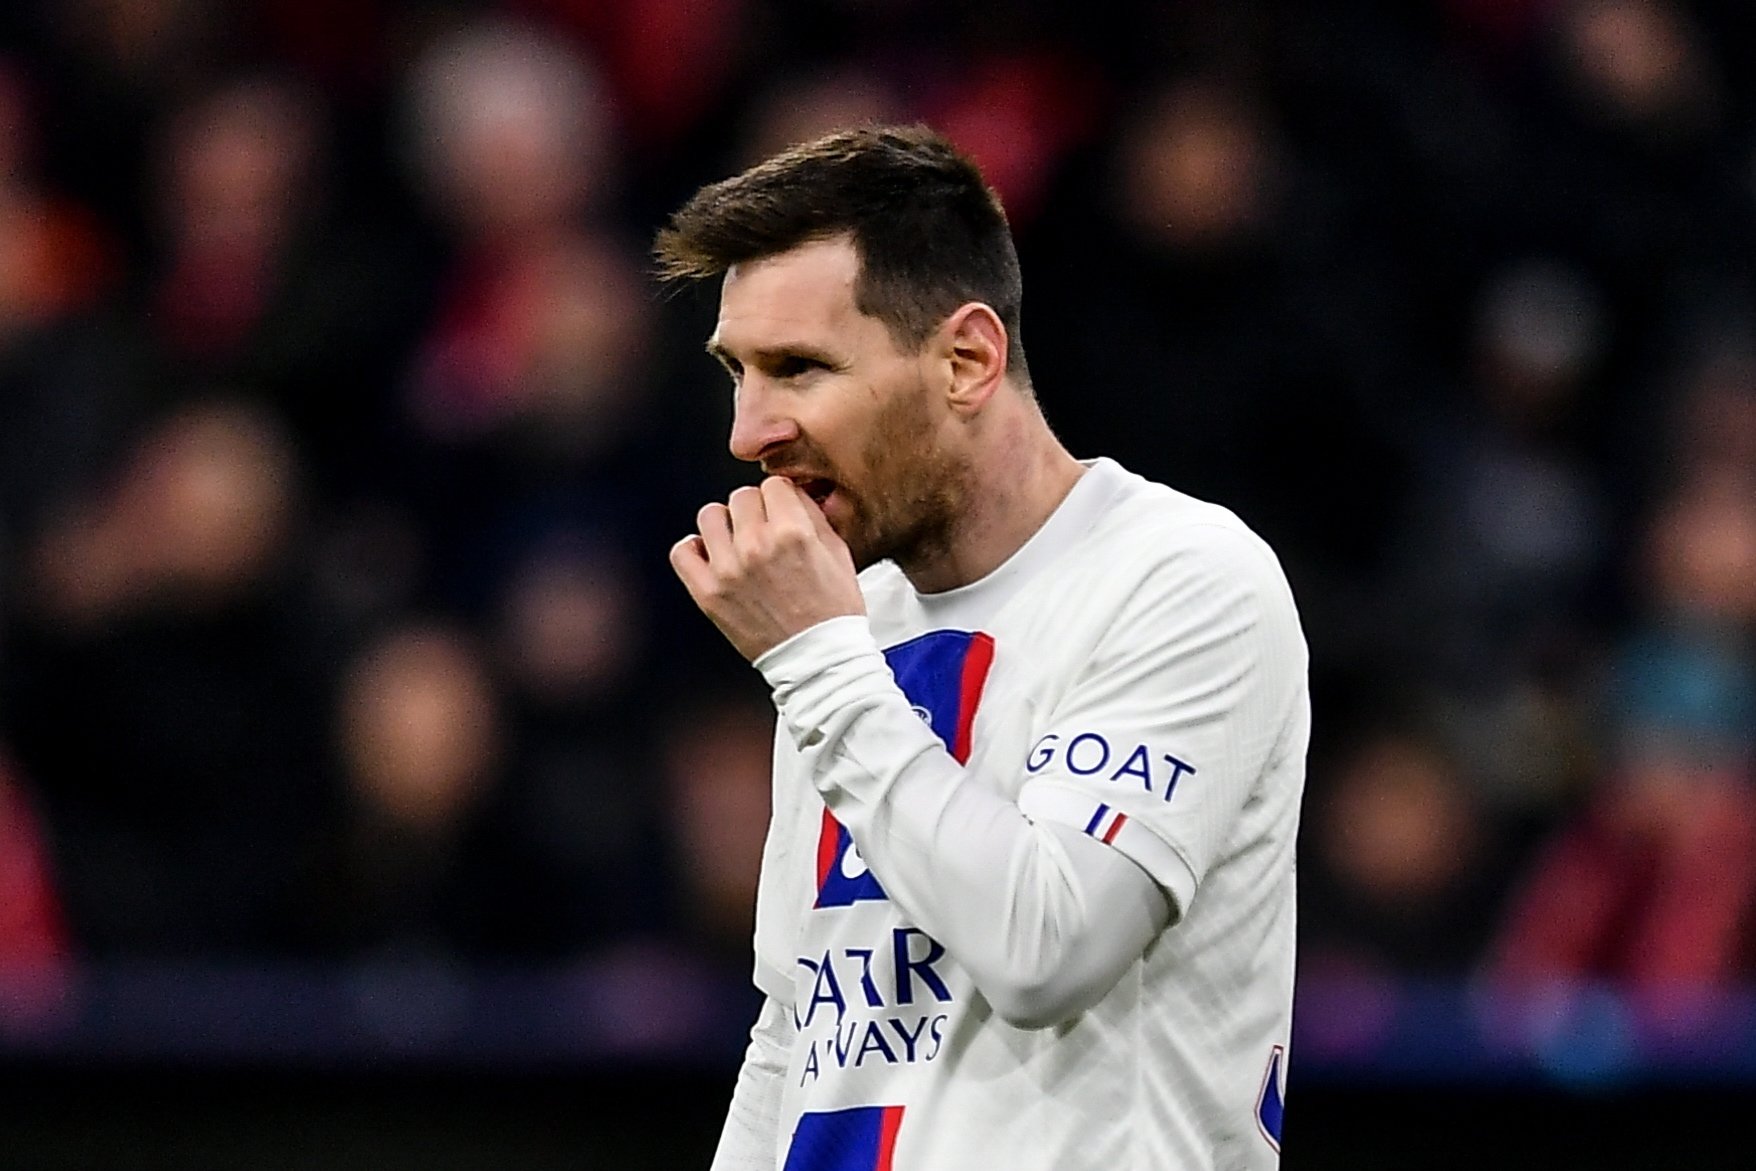 La escabechina del Barça para traer de vuelta a Messi: dos jugadores fuera